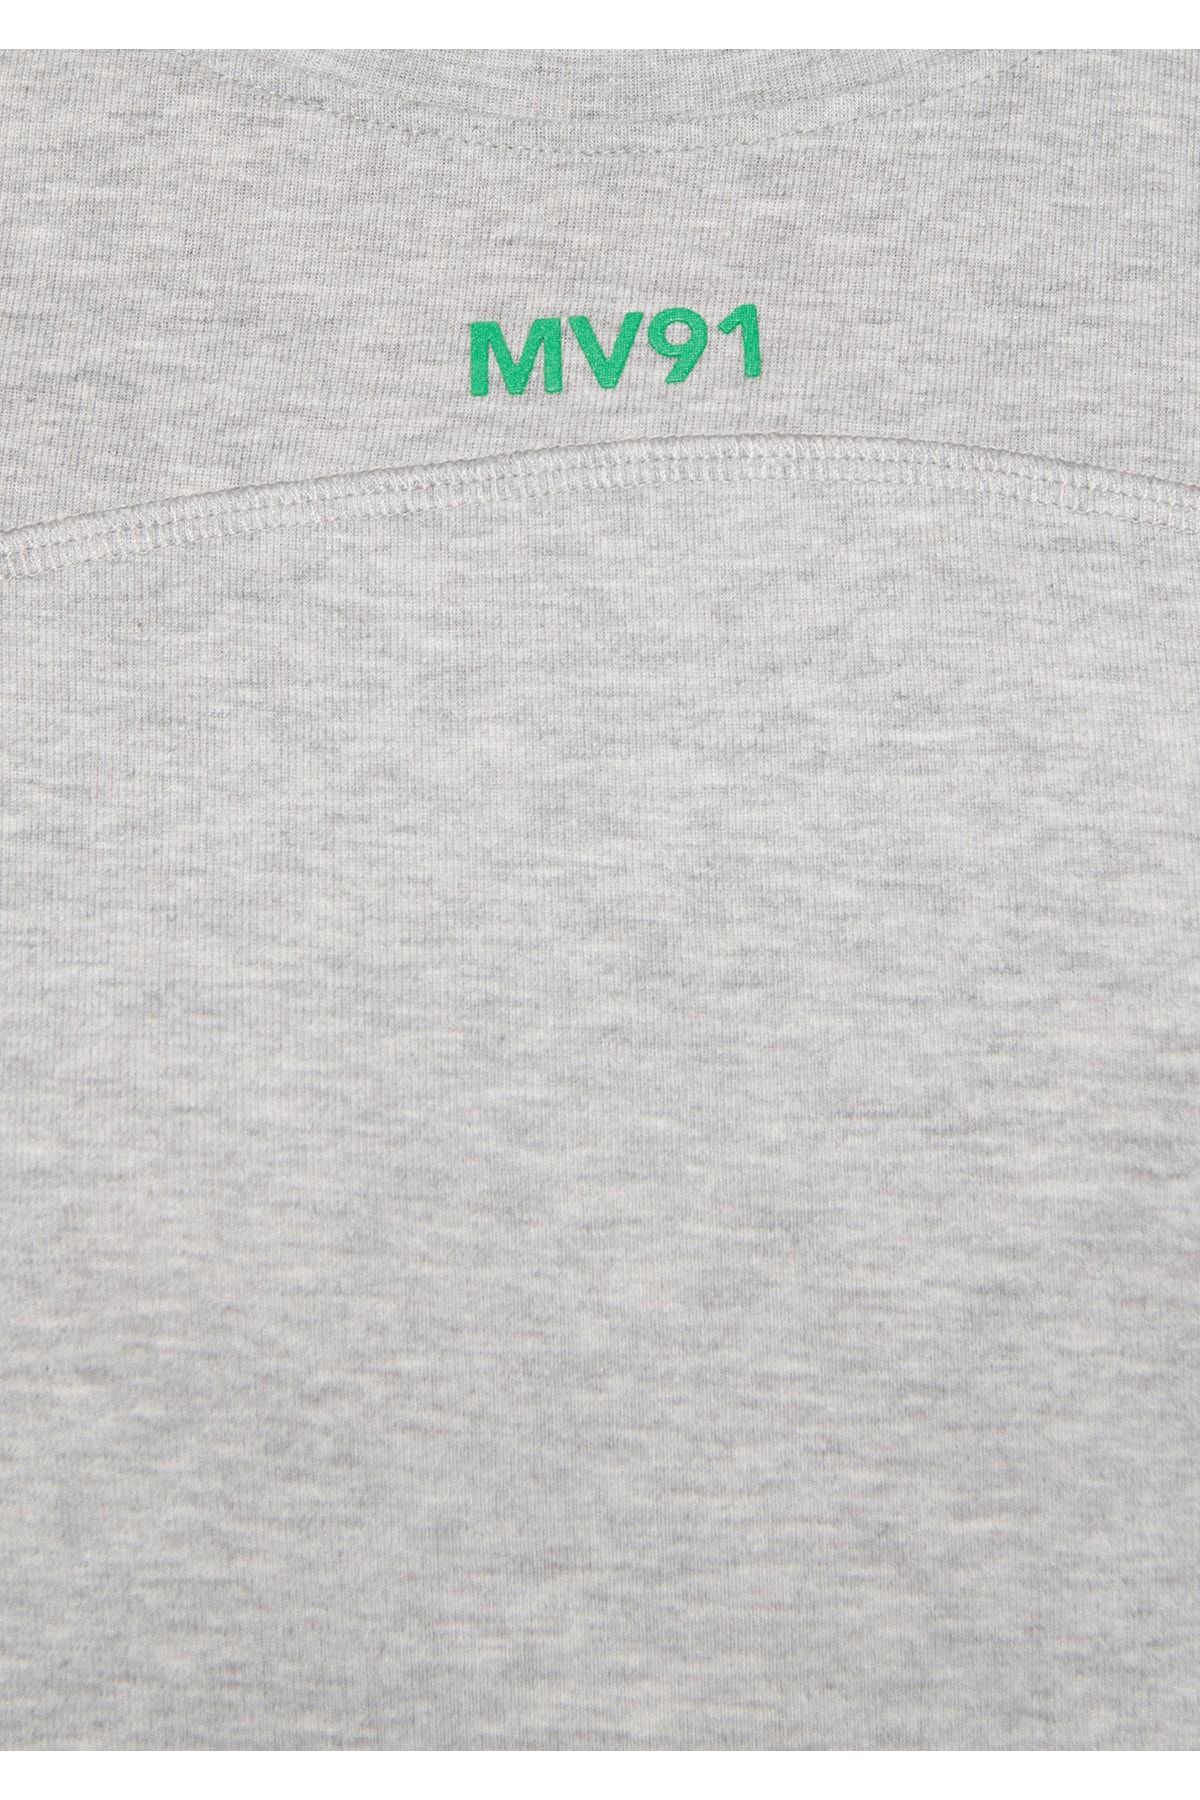 Mavi تی شرت خاکستری چاپی بزرگ / بخش گسترده 1611314-80018